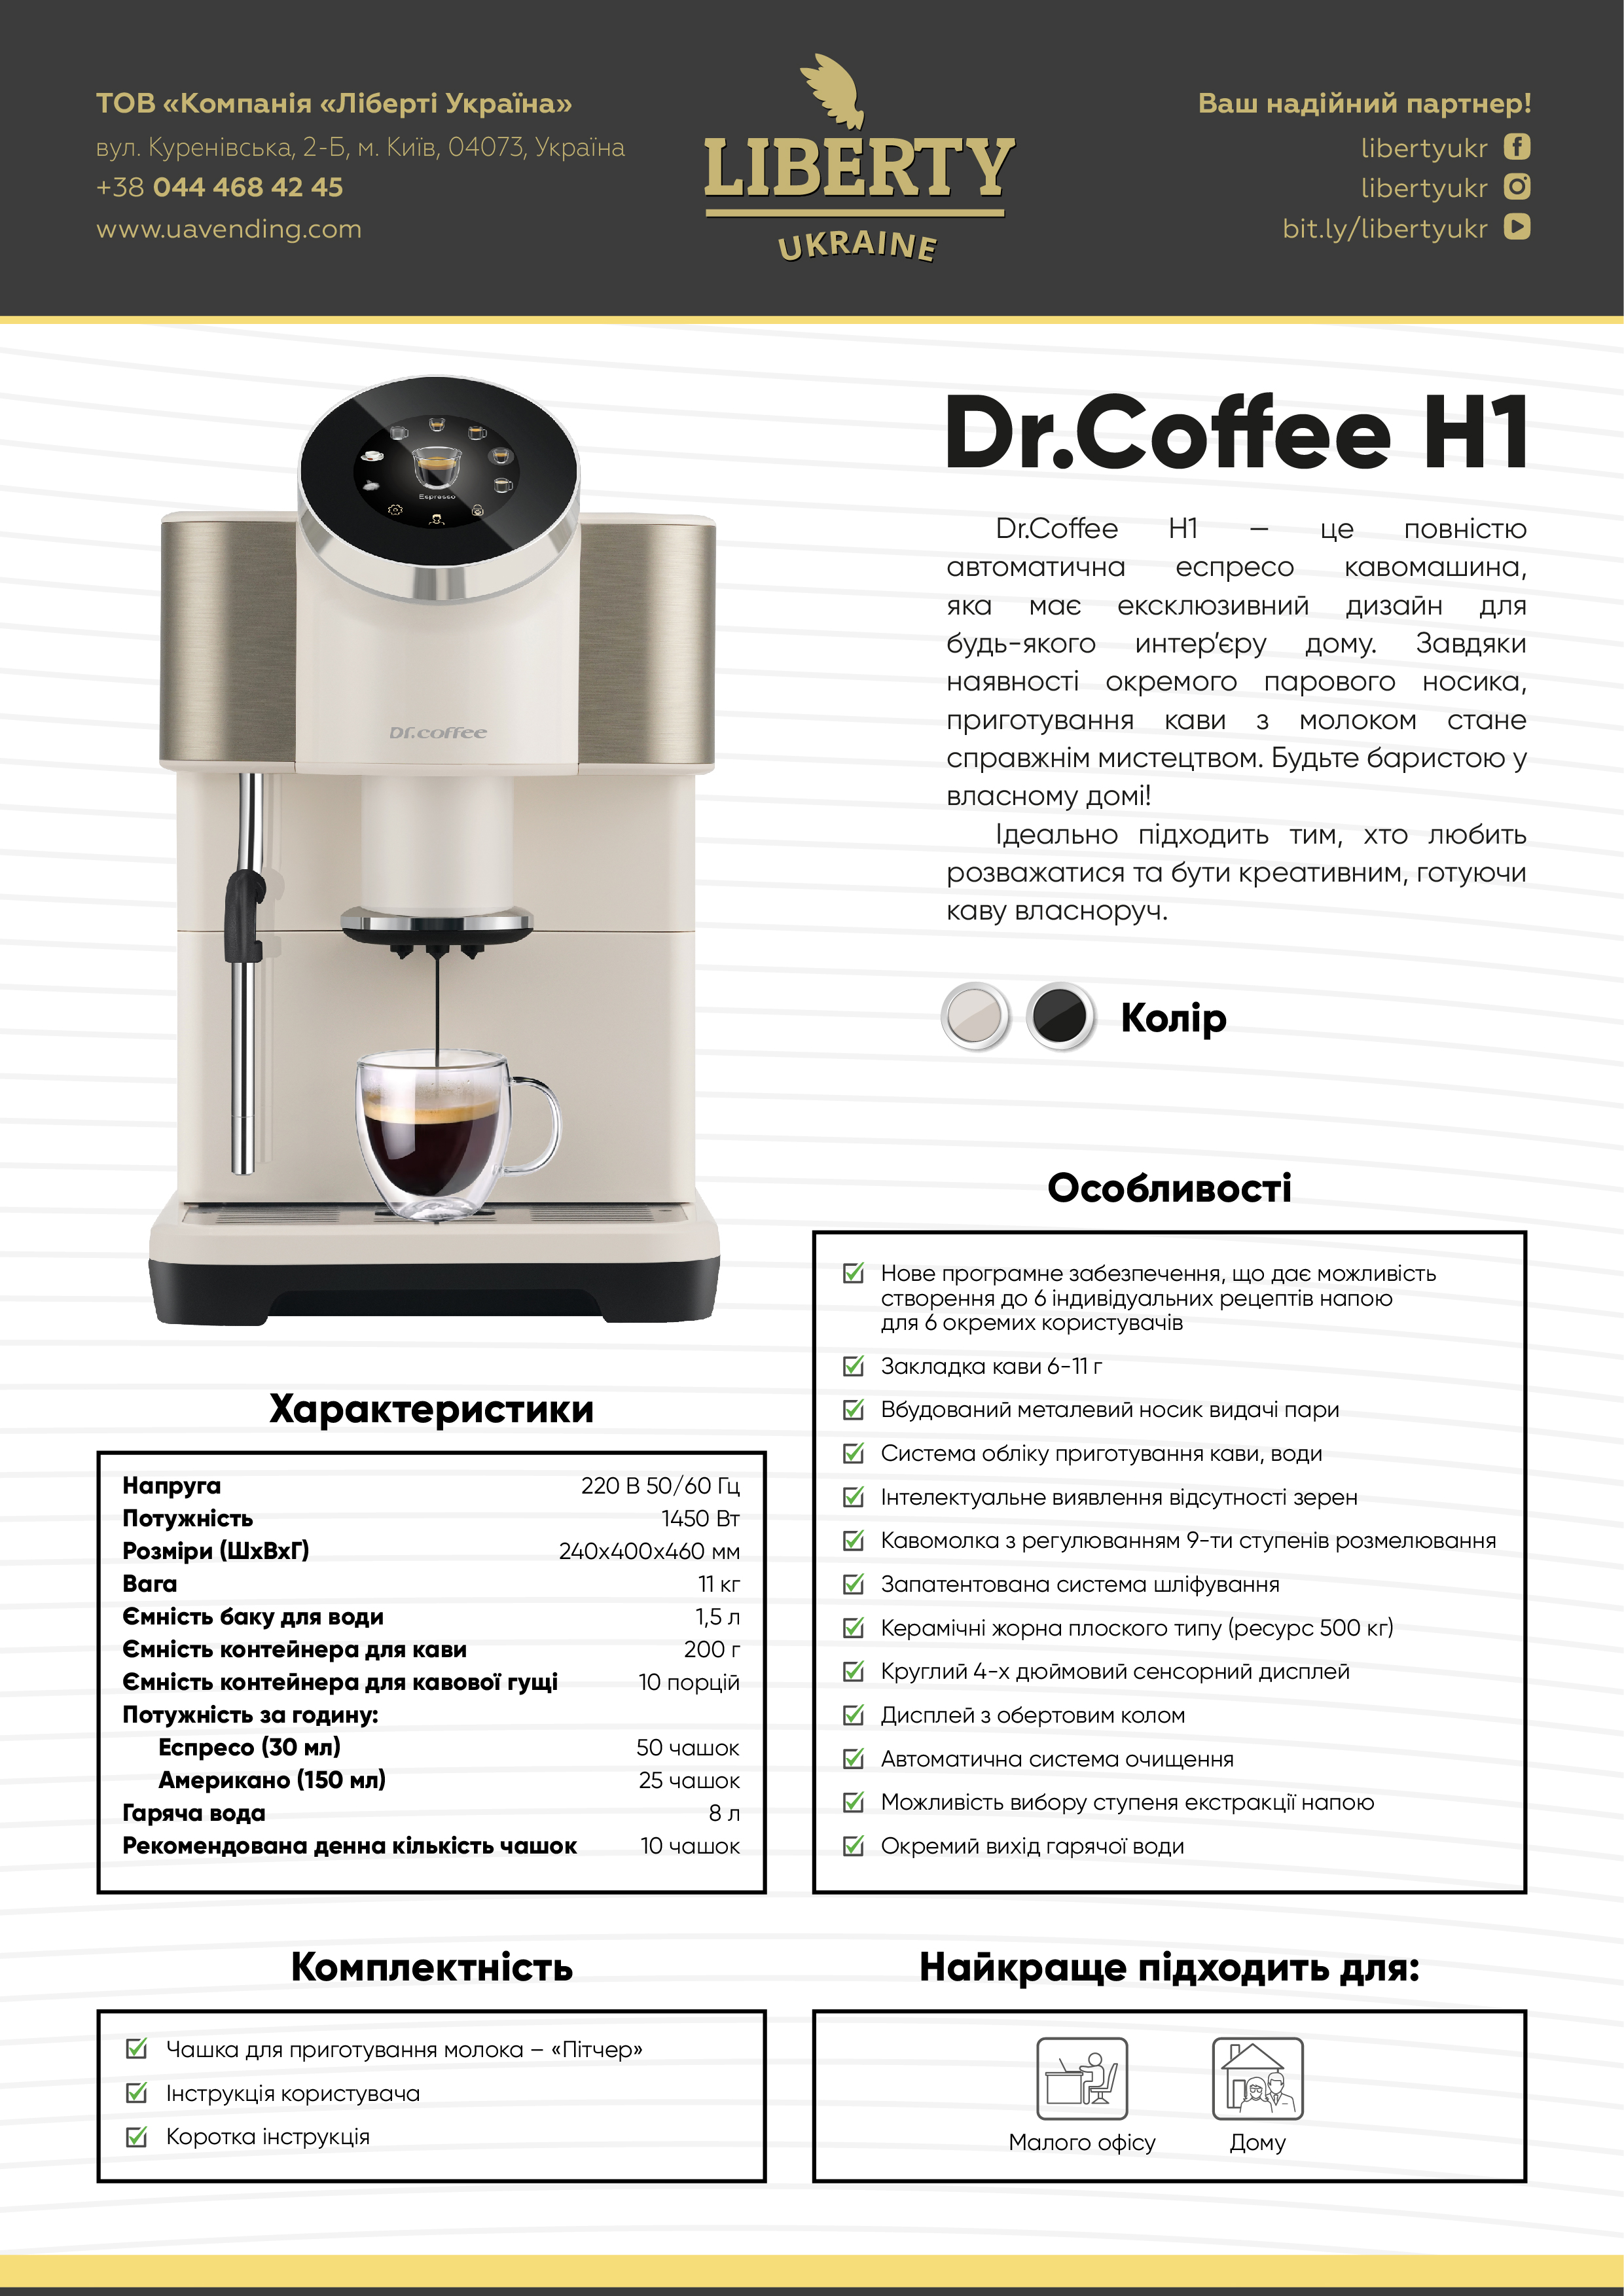 Dr. Café_H1